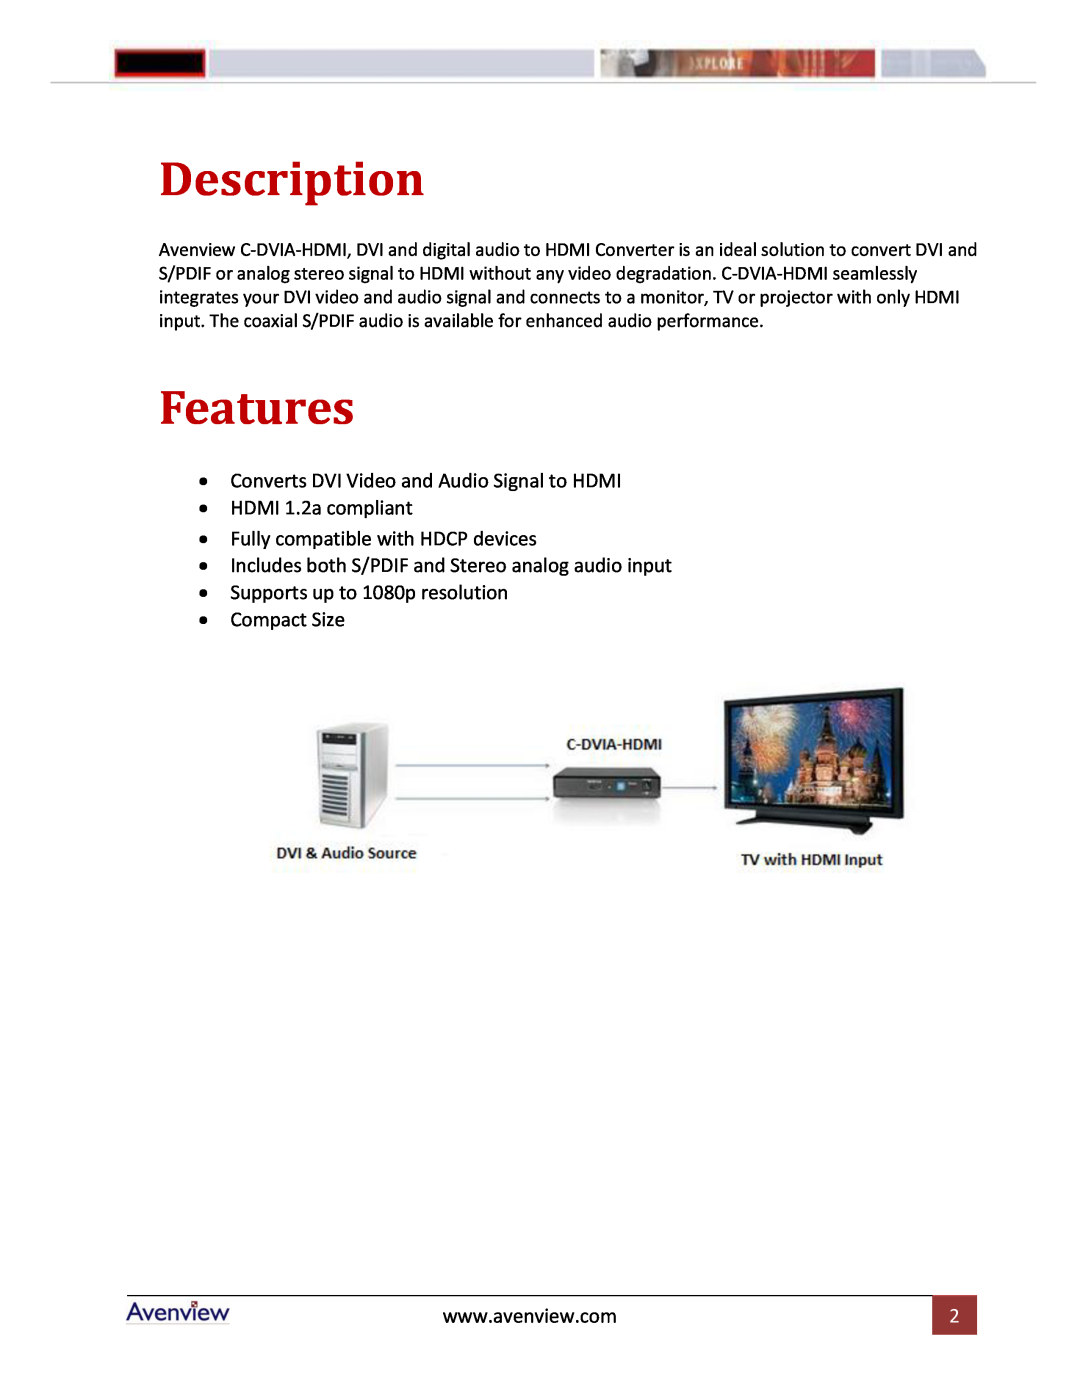 Avenview C-DVIA-HDMI manual Description, Features 